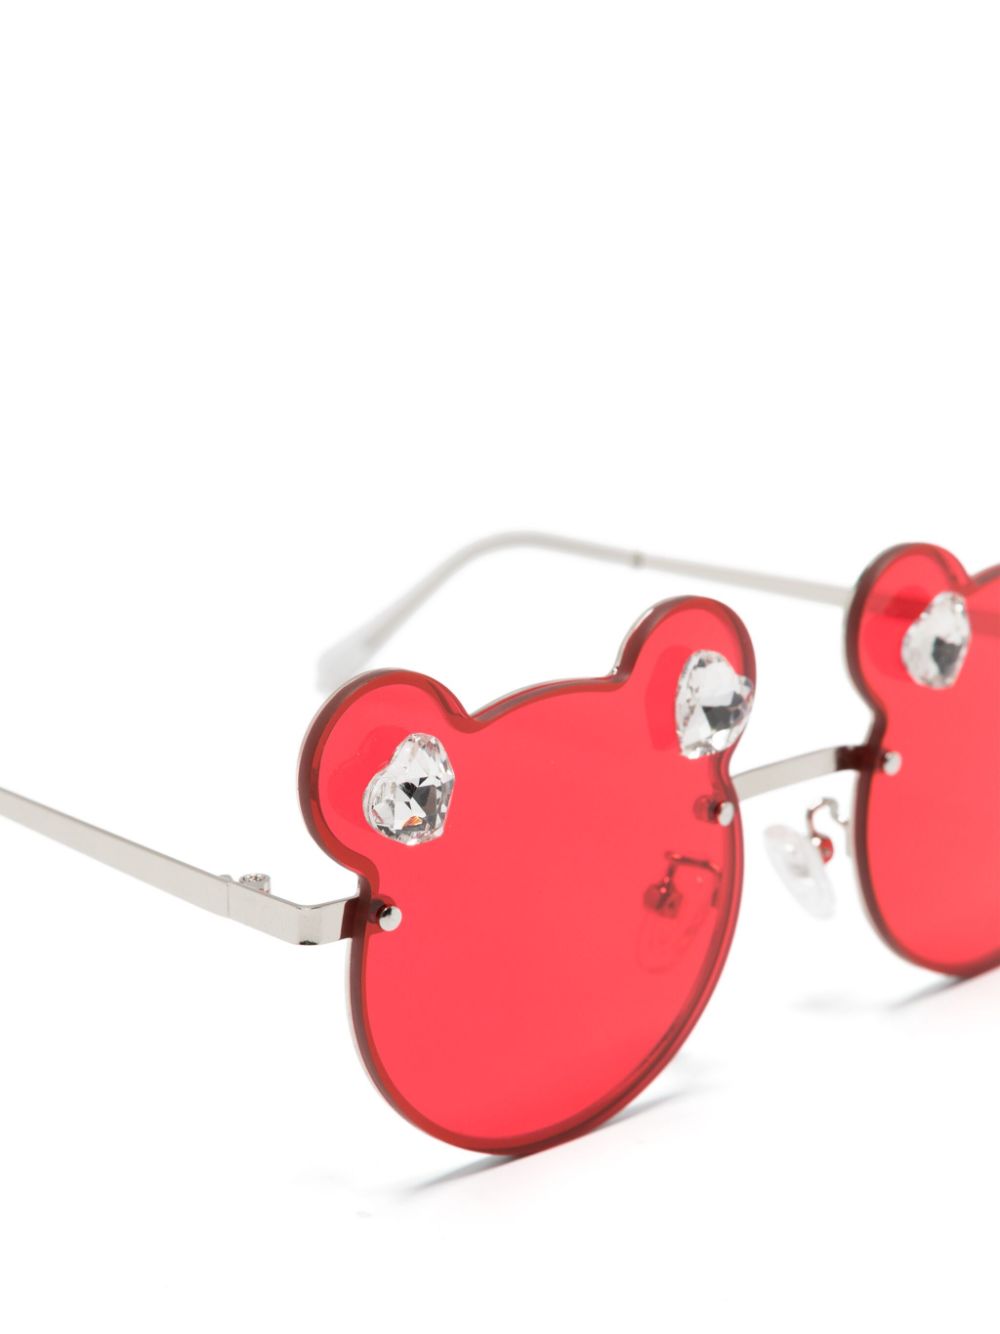 Petites lunettes rousses